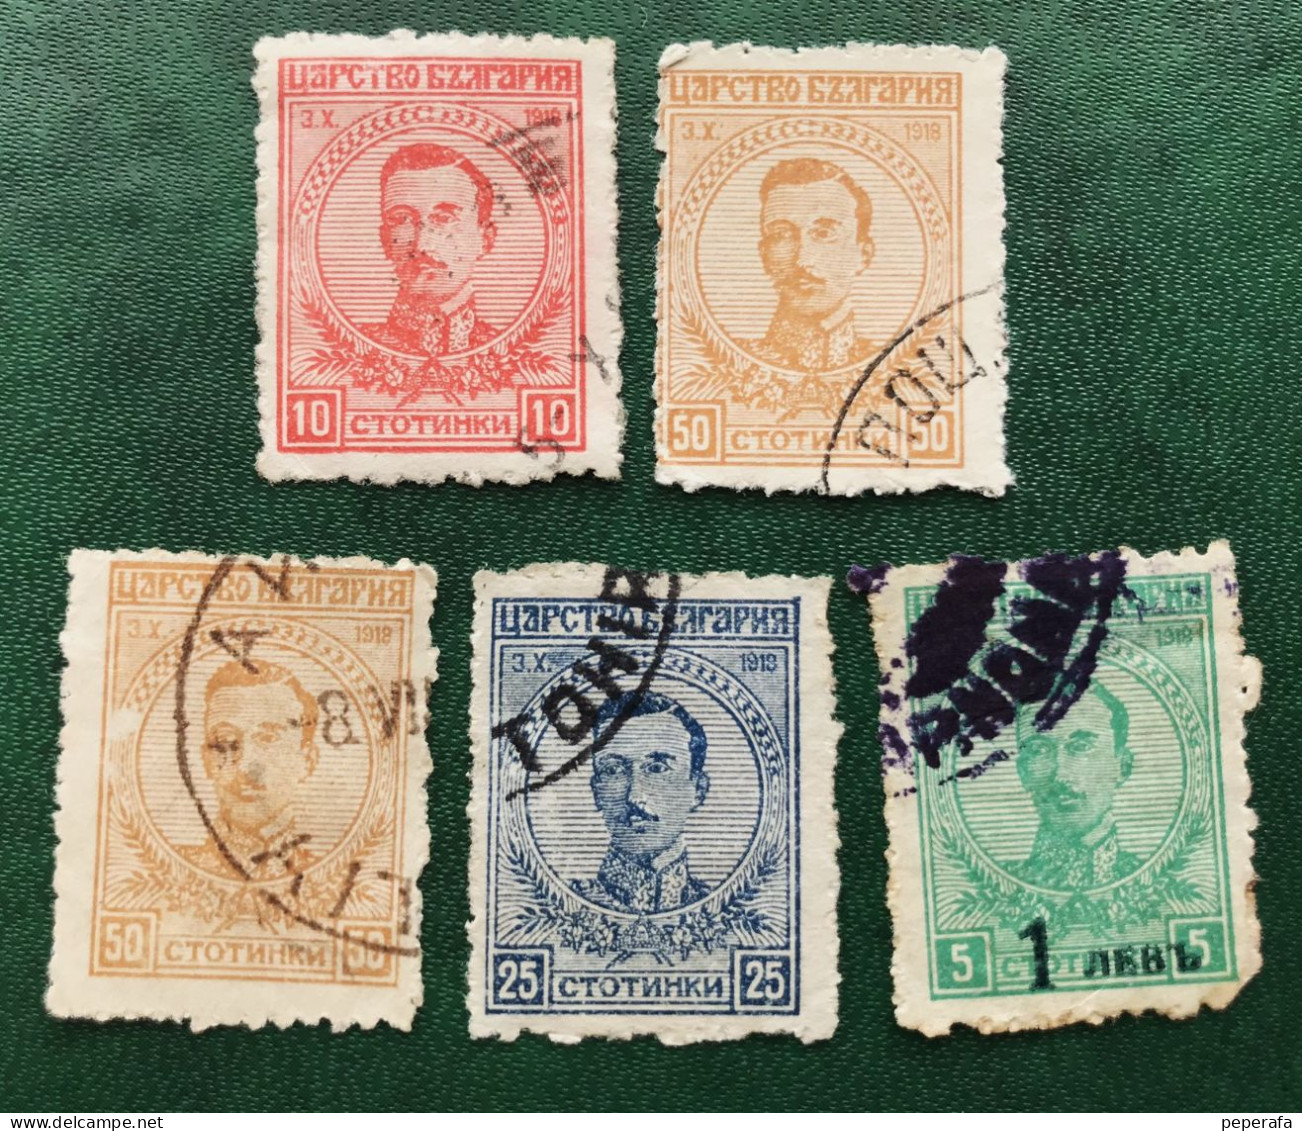 BULGARIA COLECCIÓN SELLOS CLÁSICOS (LOTE 1) - Used Stamps